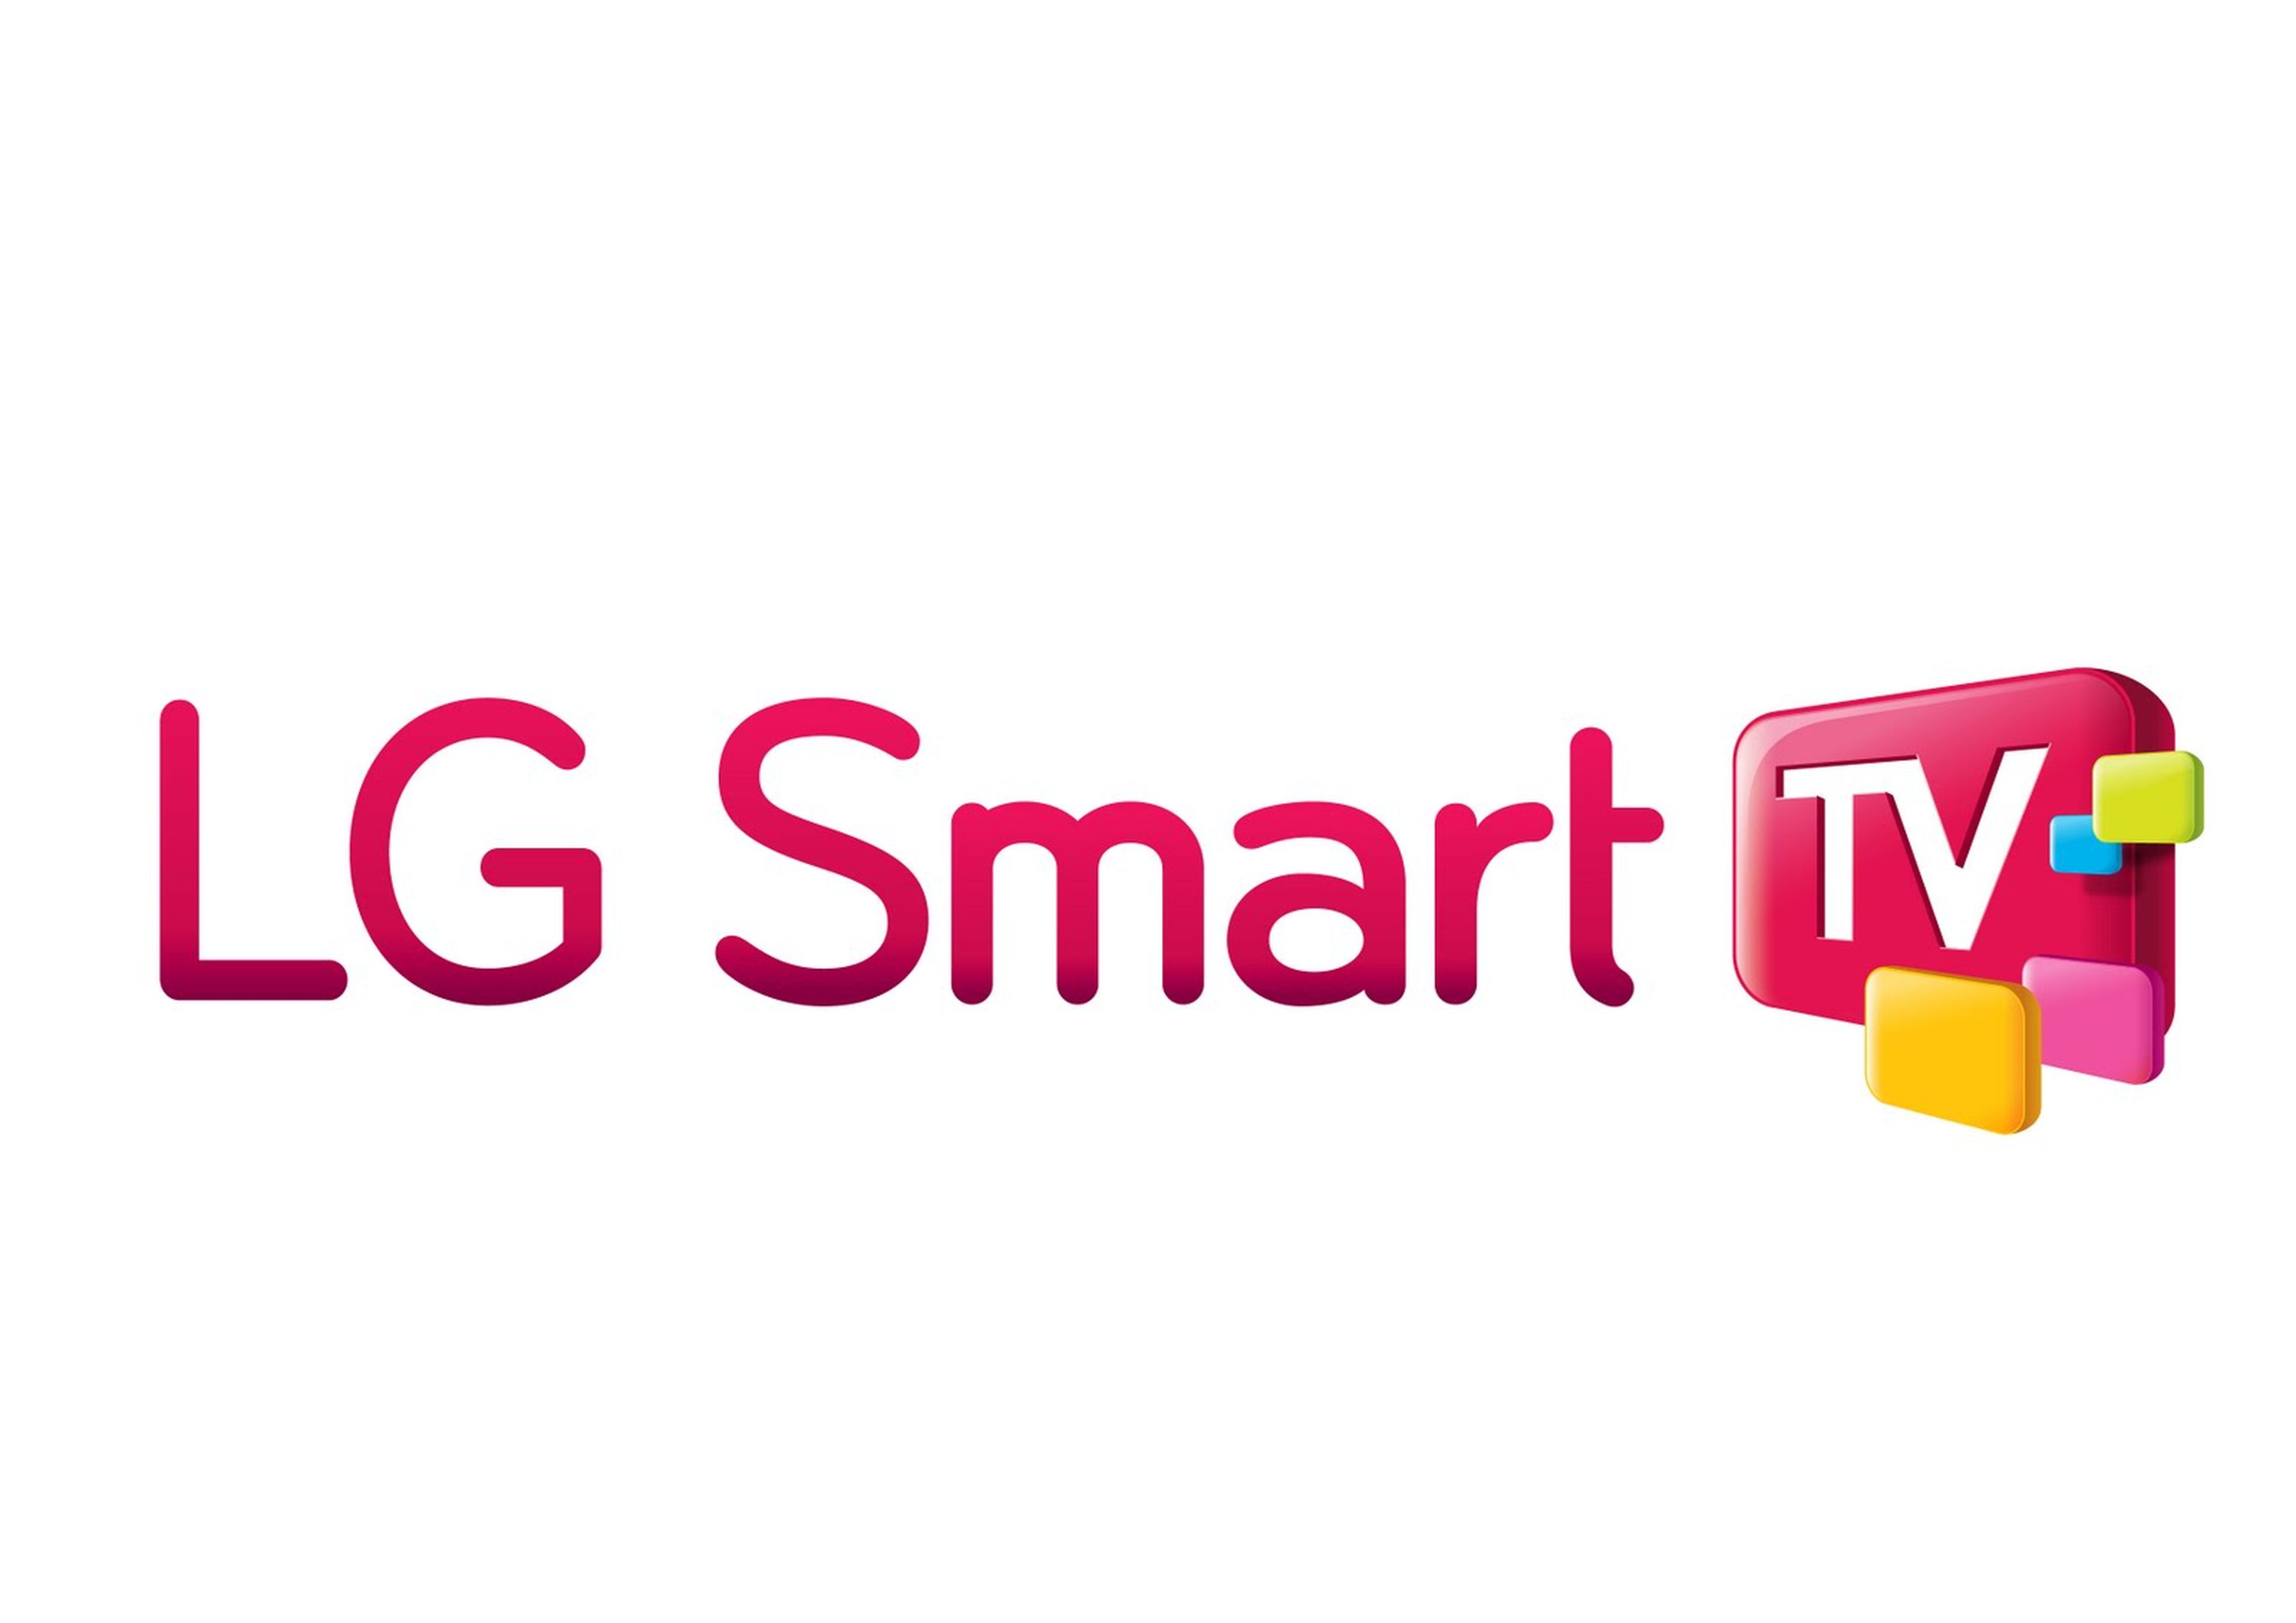 LG planea incluir webOS en sus nueva generación de televisores Smart TV